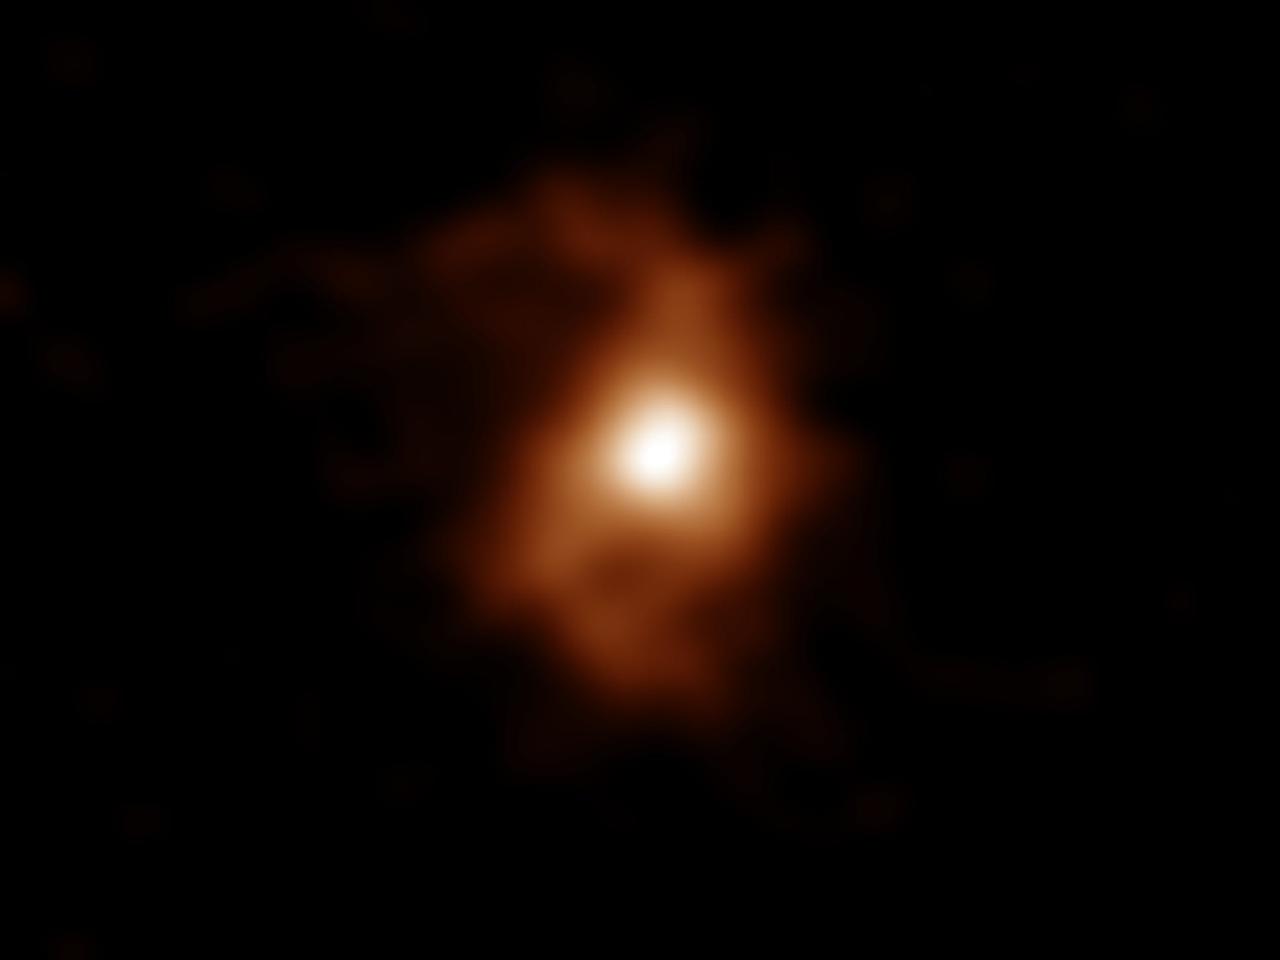 アルマ望遠鏡が捉えた124億年前に形成された銀河BRI 1335-0417。